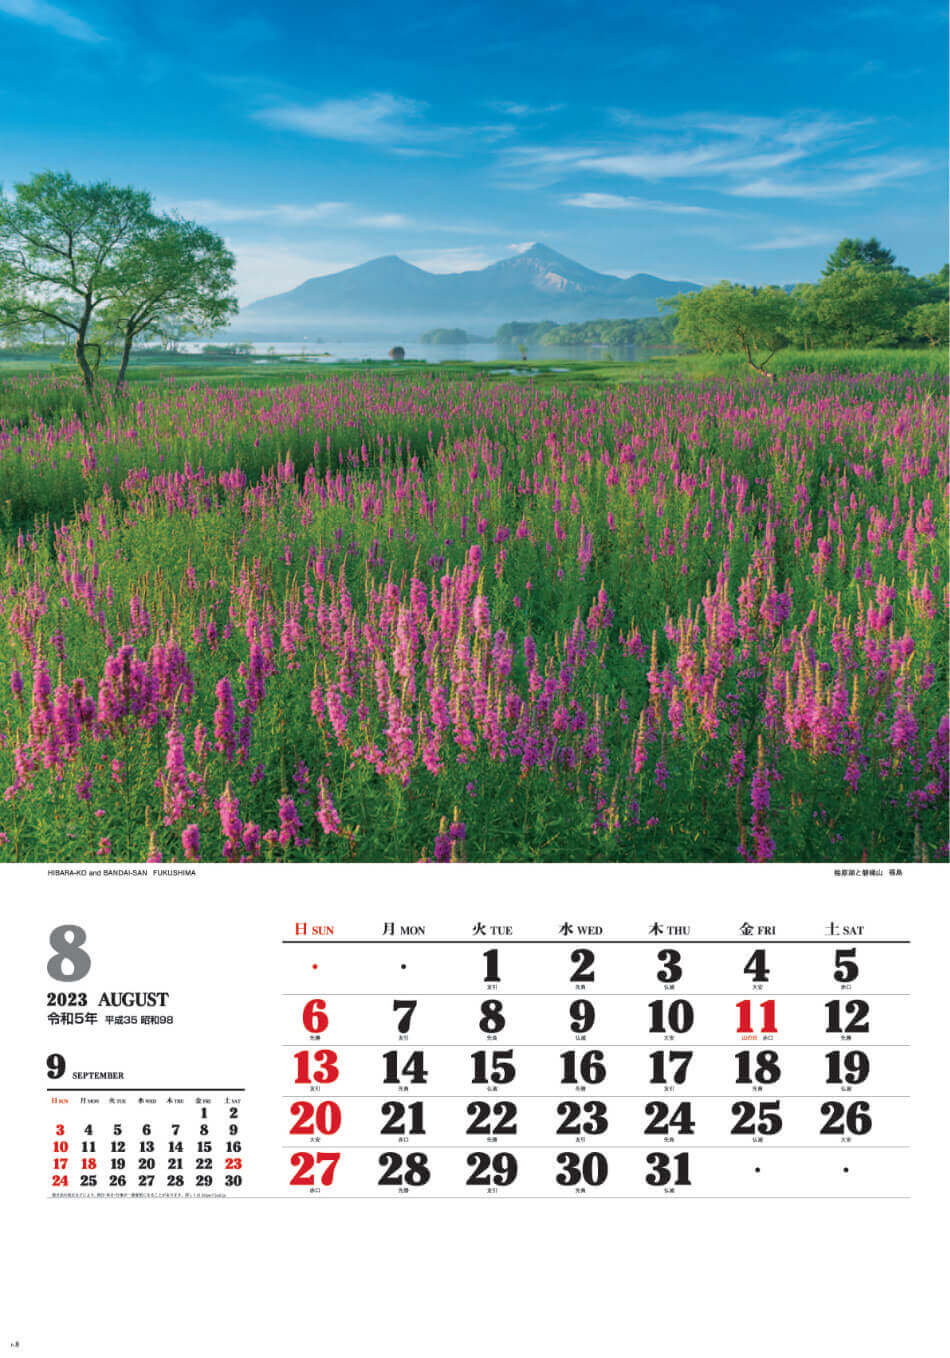 8月 桧原湖と磐梯山(福島) ワイドニッポン十二選(フィルムカレンダー) 2023年カレンダーの画像